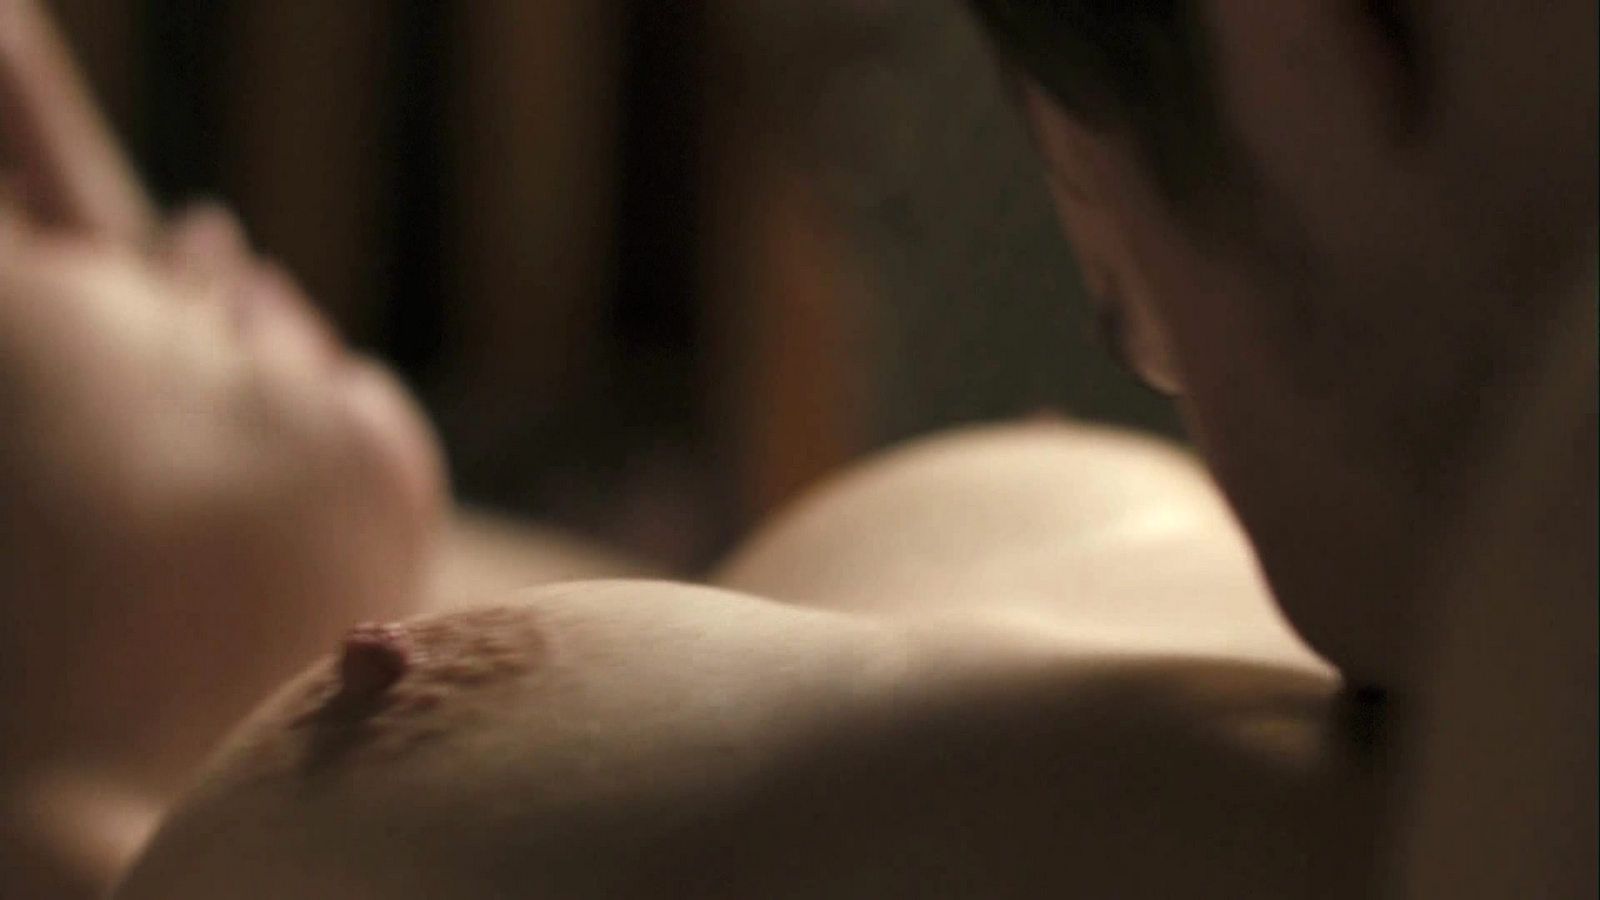 Gemma Arterton Nude Pics Naked Filmvz Portal Images Femalecelebrity